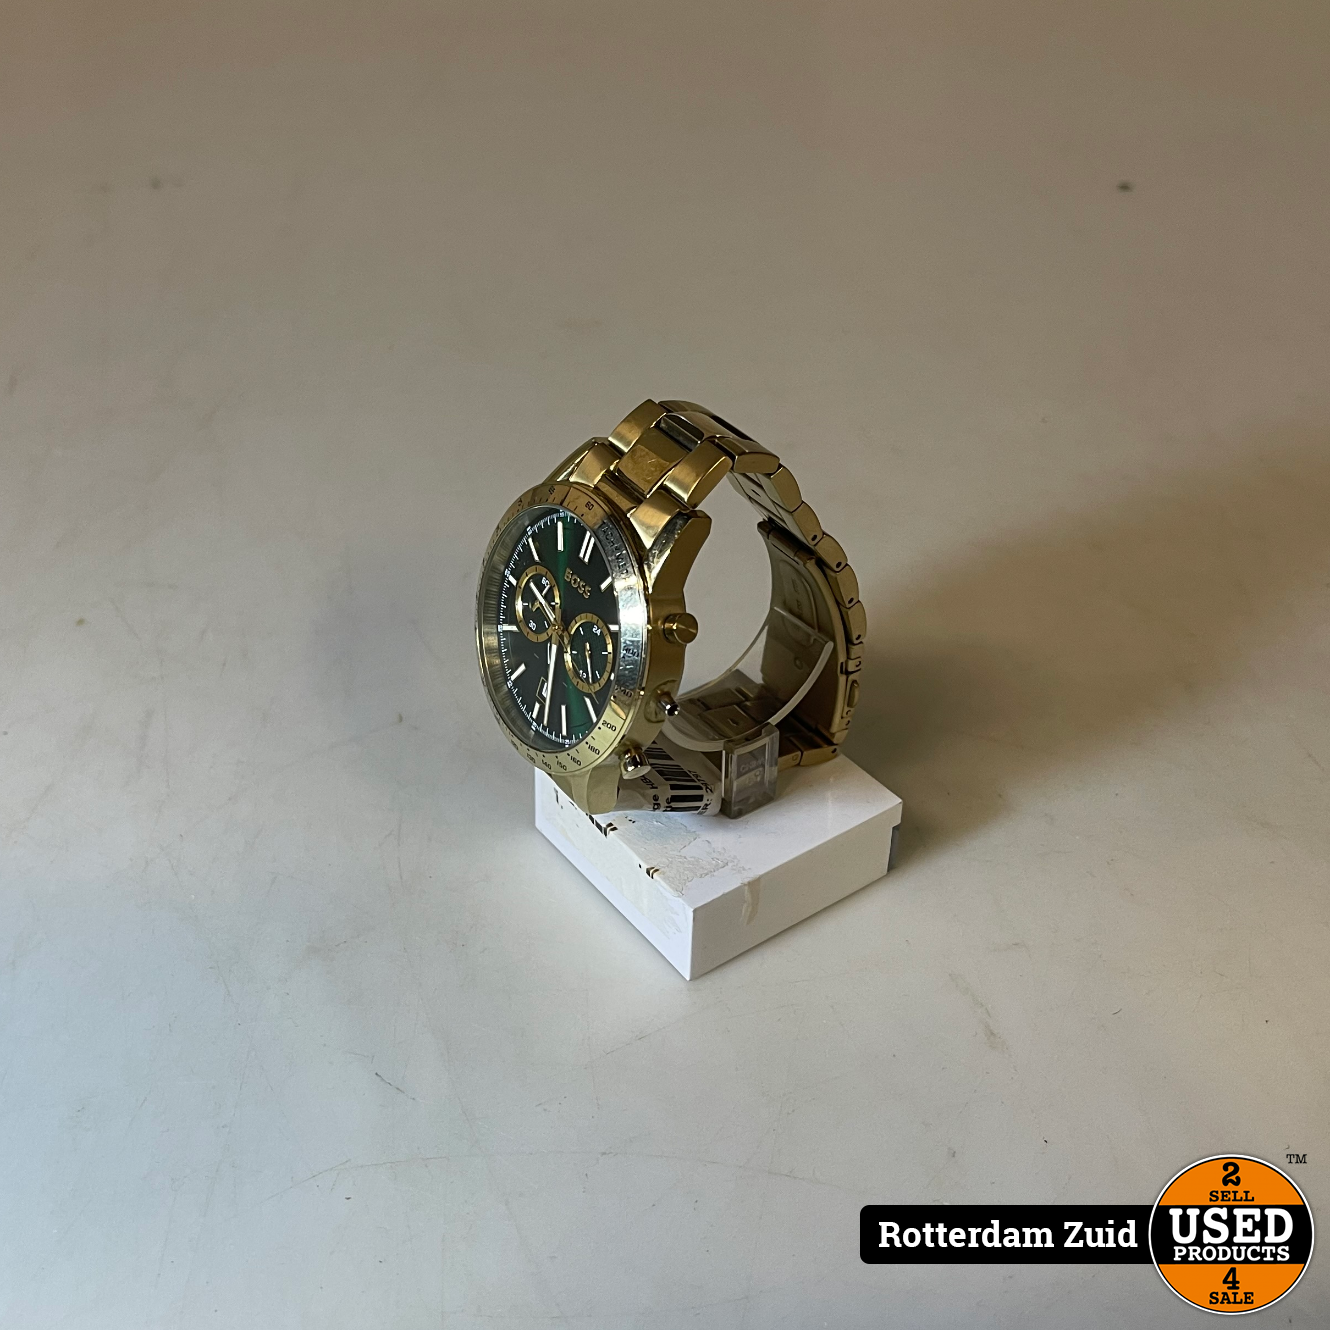 vergeven Vooruitzien Ounce Hugo Boss Horloge HB449 | Nette Staat | Met Garantie - Used Products  Rotterdam Zuid